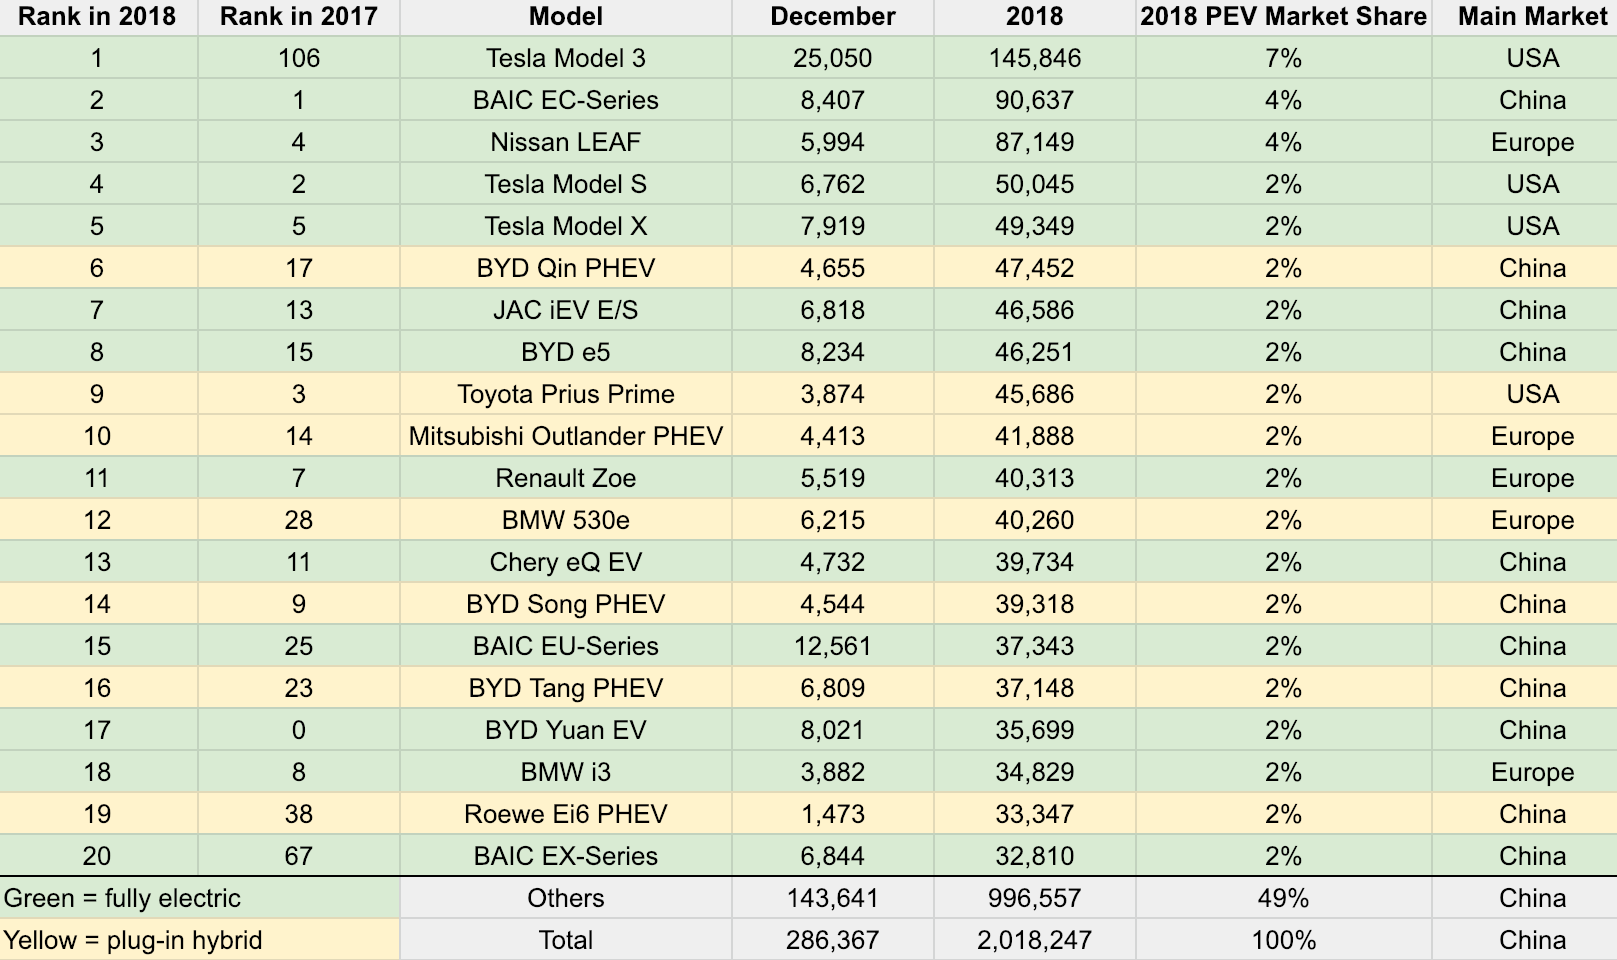 Tesla Model 3 = #1 Best Selling Electric Car in World, 7% of Global EV Market in 2018